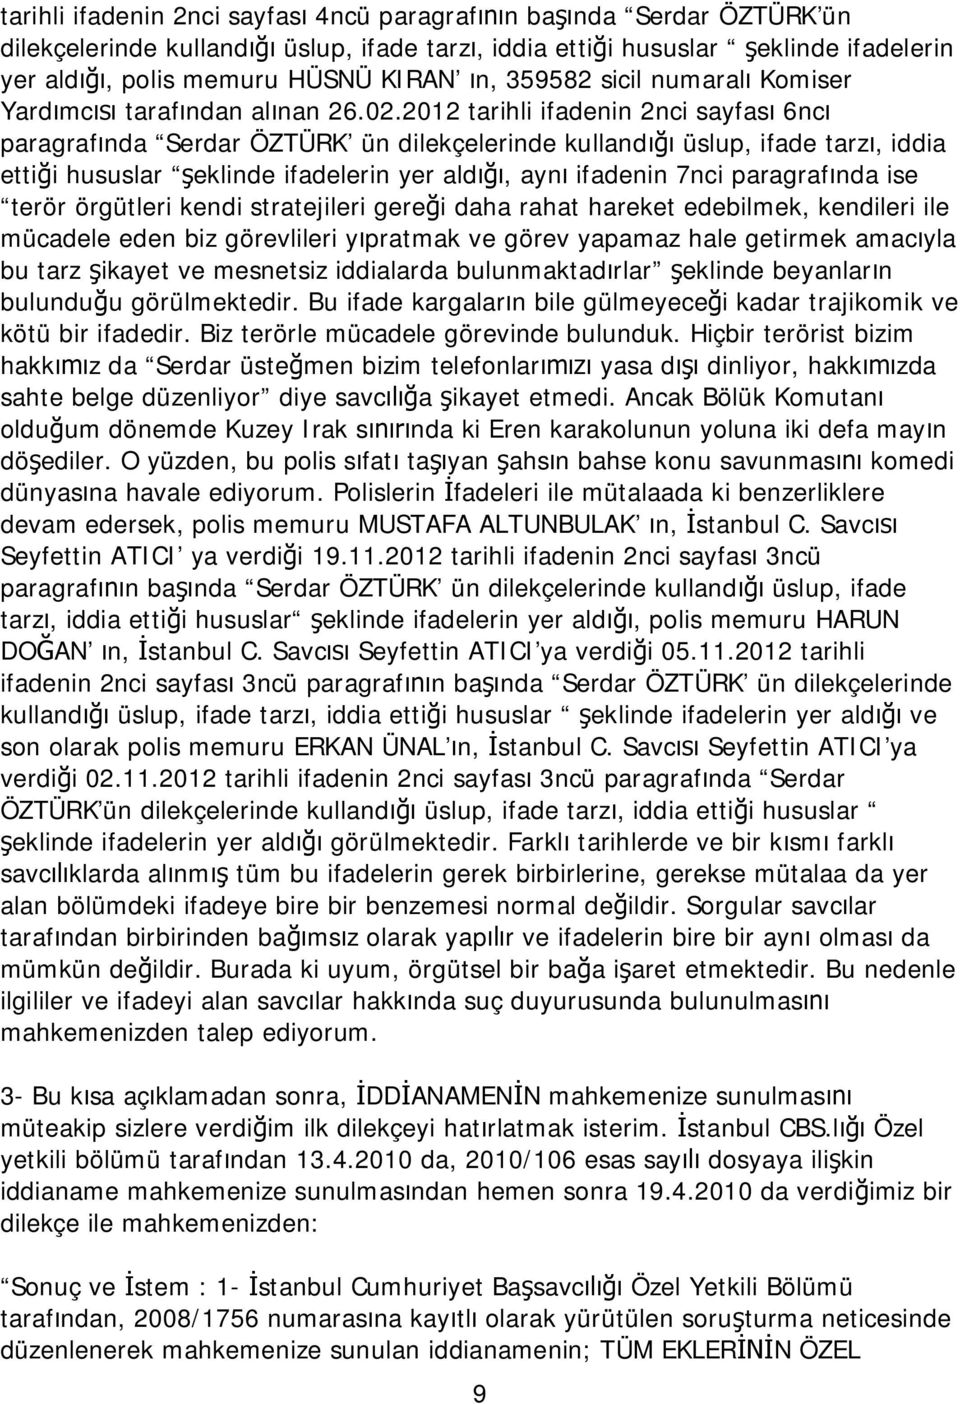 2012 tarihli ifadenin 2nci sayfası 6ncı paragrafında Serdar ÖZTÜRK ün dilekçelerinde kullandığı üslup, ifade tarzı, iddia ettiği hususlar şeklinde ifadelerin yer aldığı, aynı ifadenin 7nci